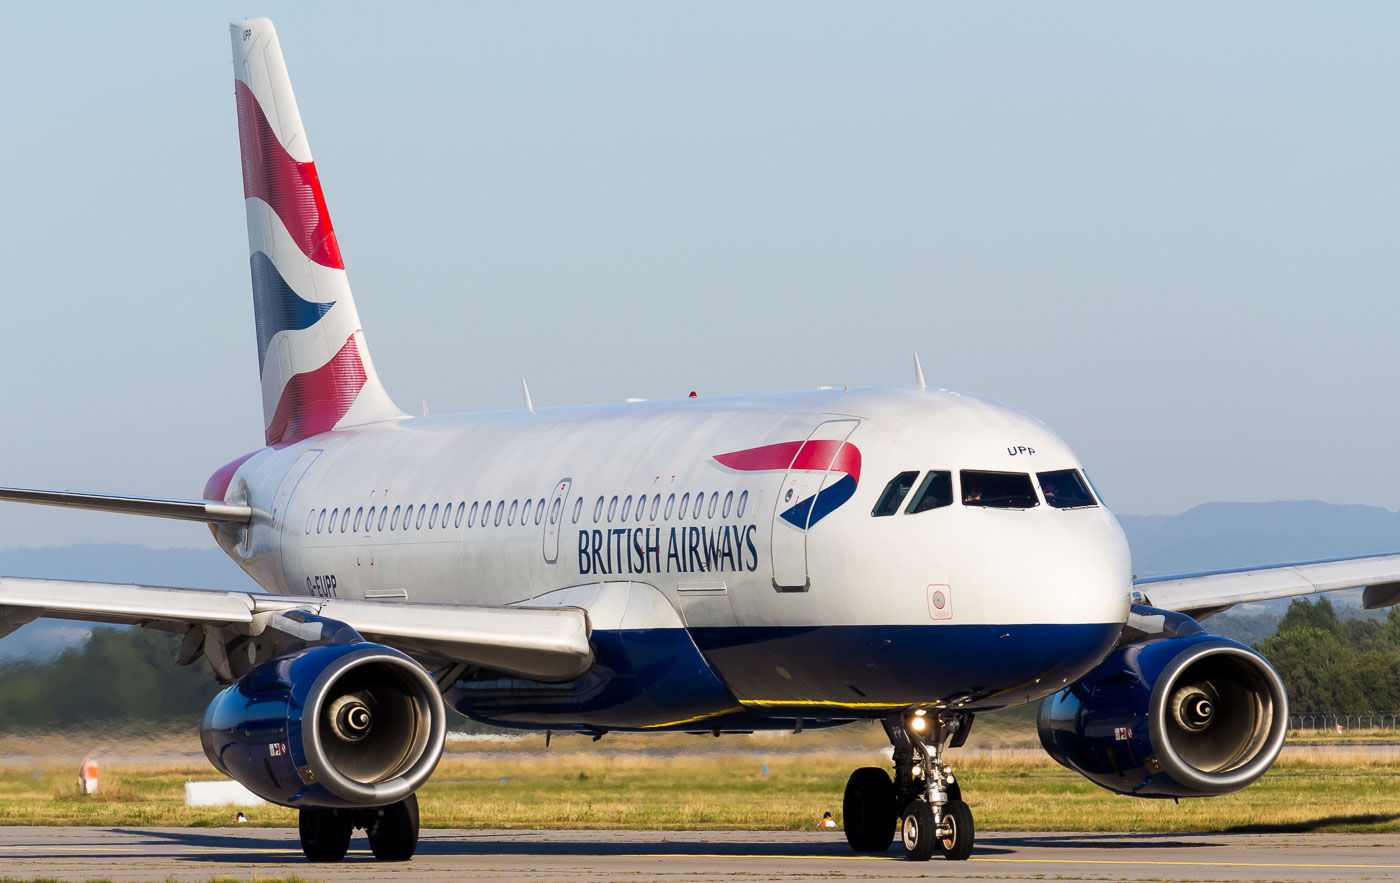 G-EUPP - British Airways Airbus A319